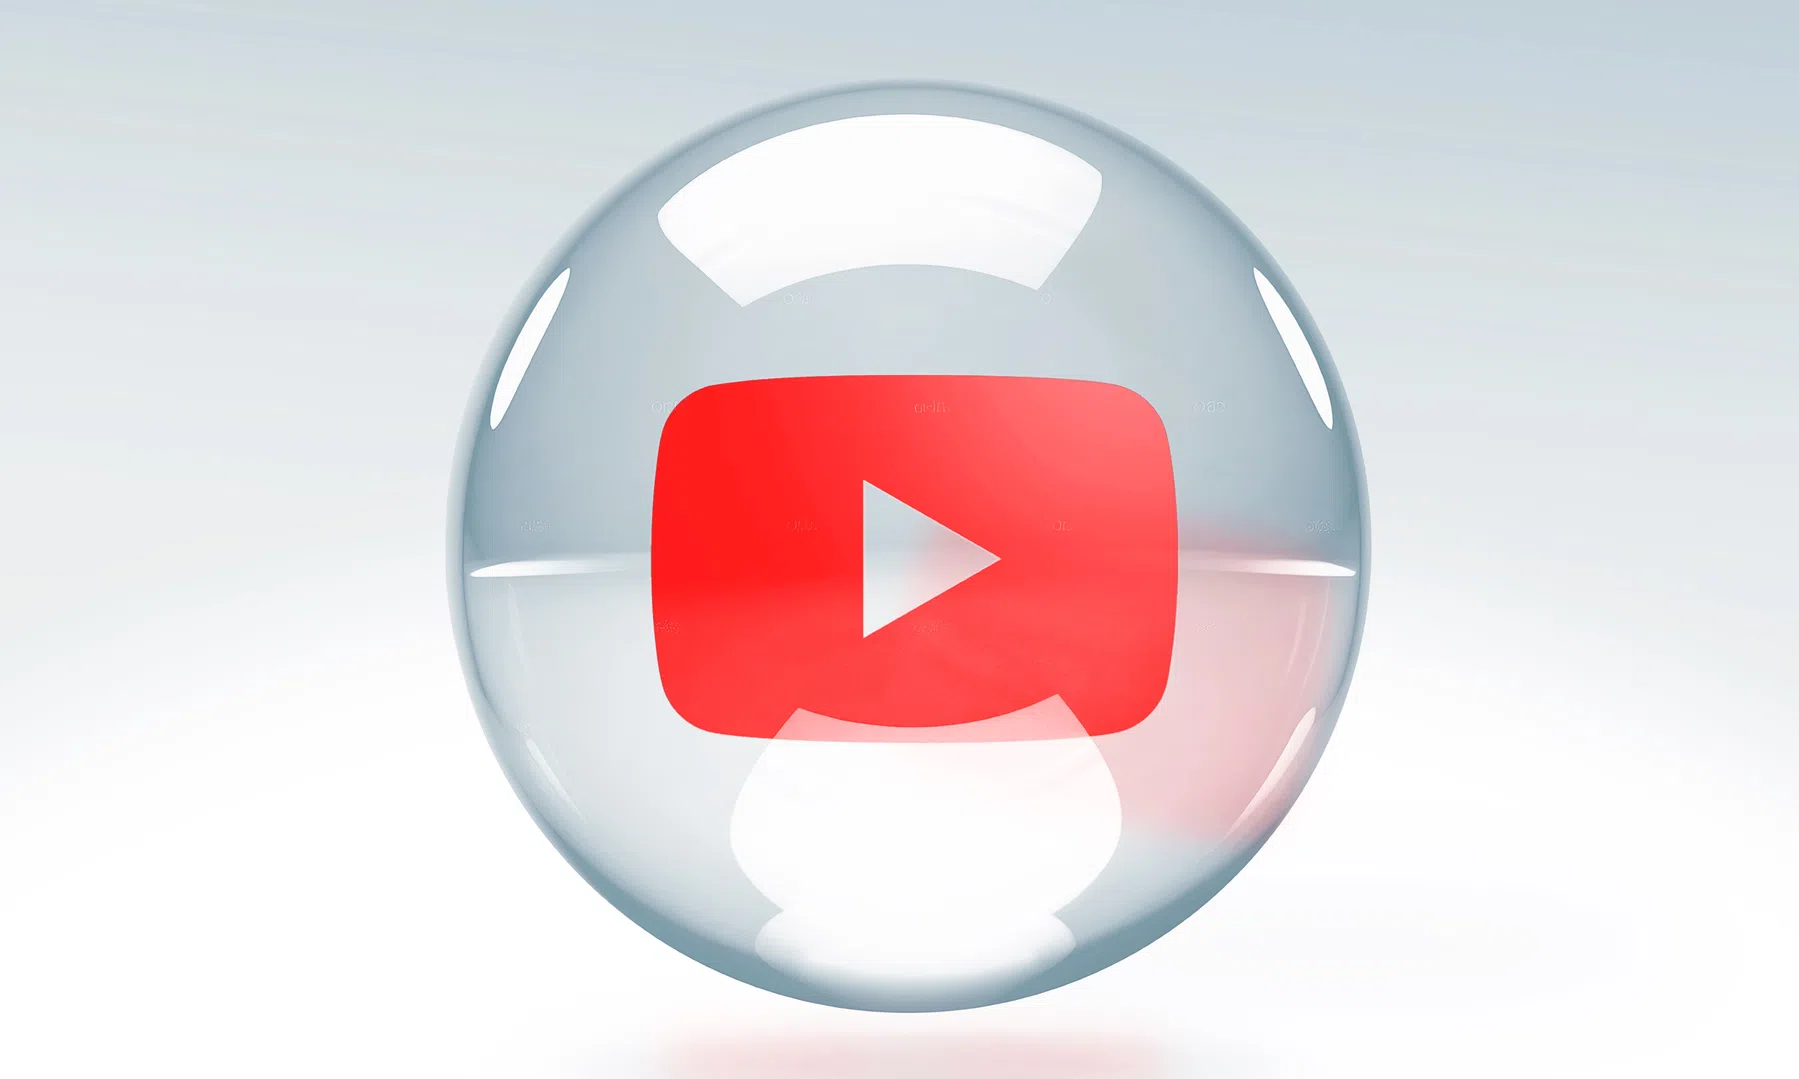 YouTube belooft te komen met nieuwe Premium-abonnementen